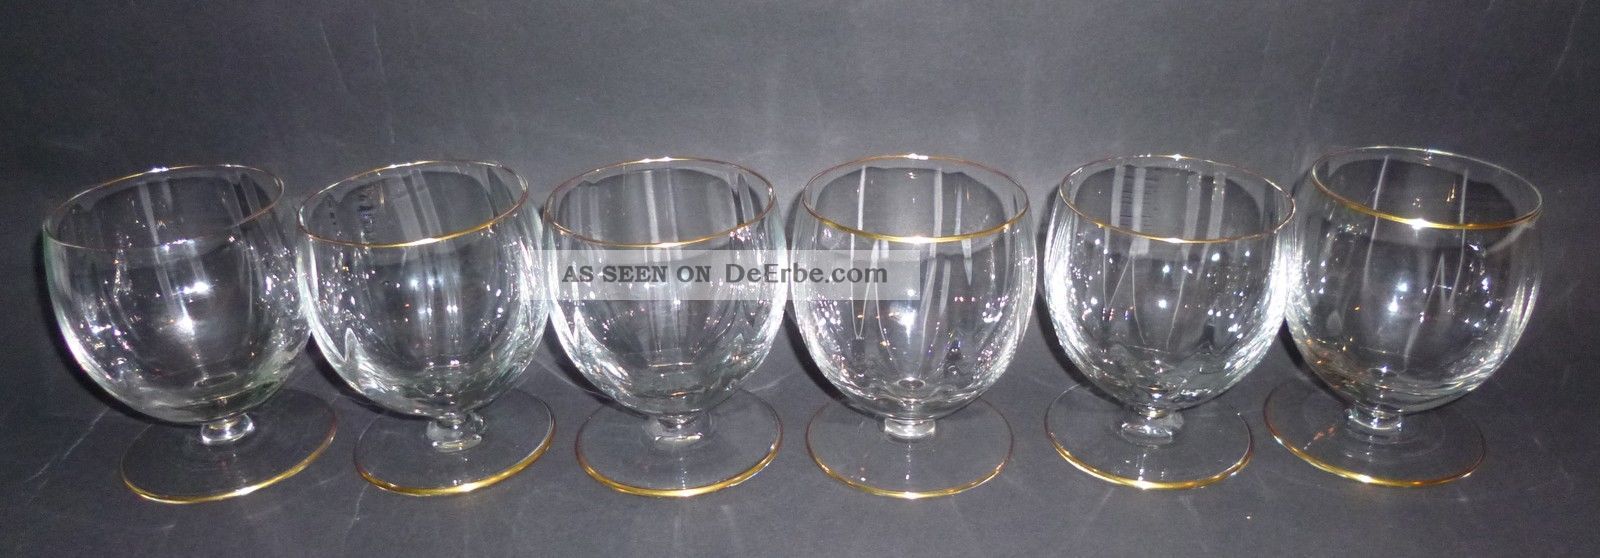 6 Seltene Jugendstil Weingläser Glas Gedrehte Kuppa Mundgeblasen Goldrand 1900 Sammlerglas Bild